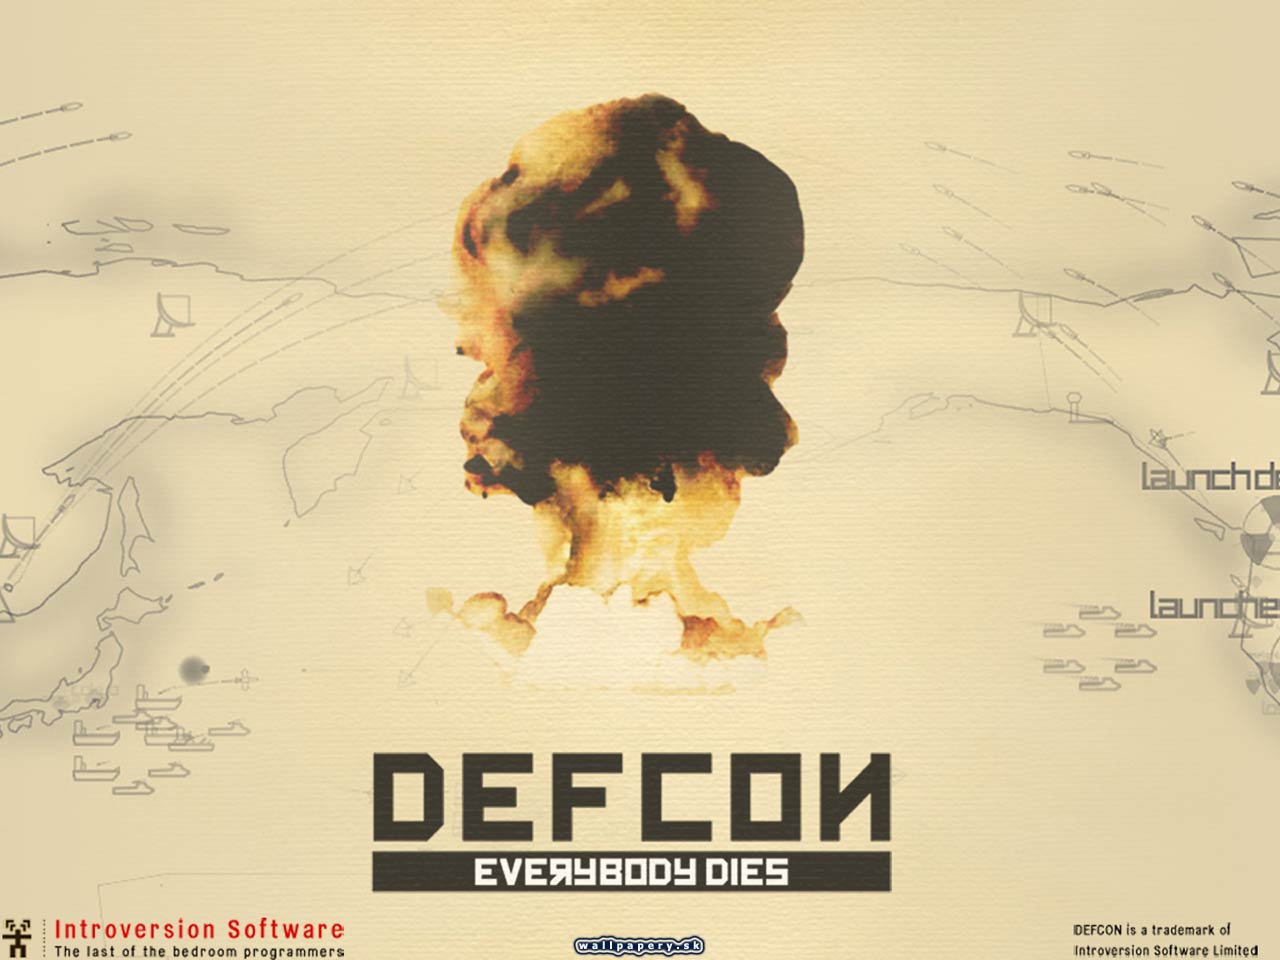 Defcon - Everybody dies - wallpaper 4